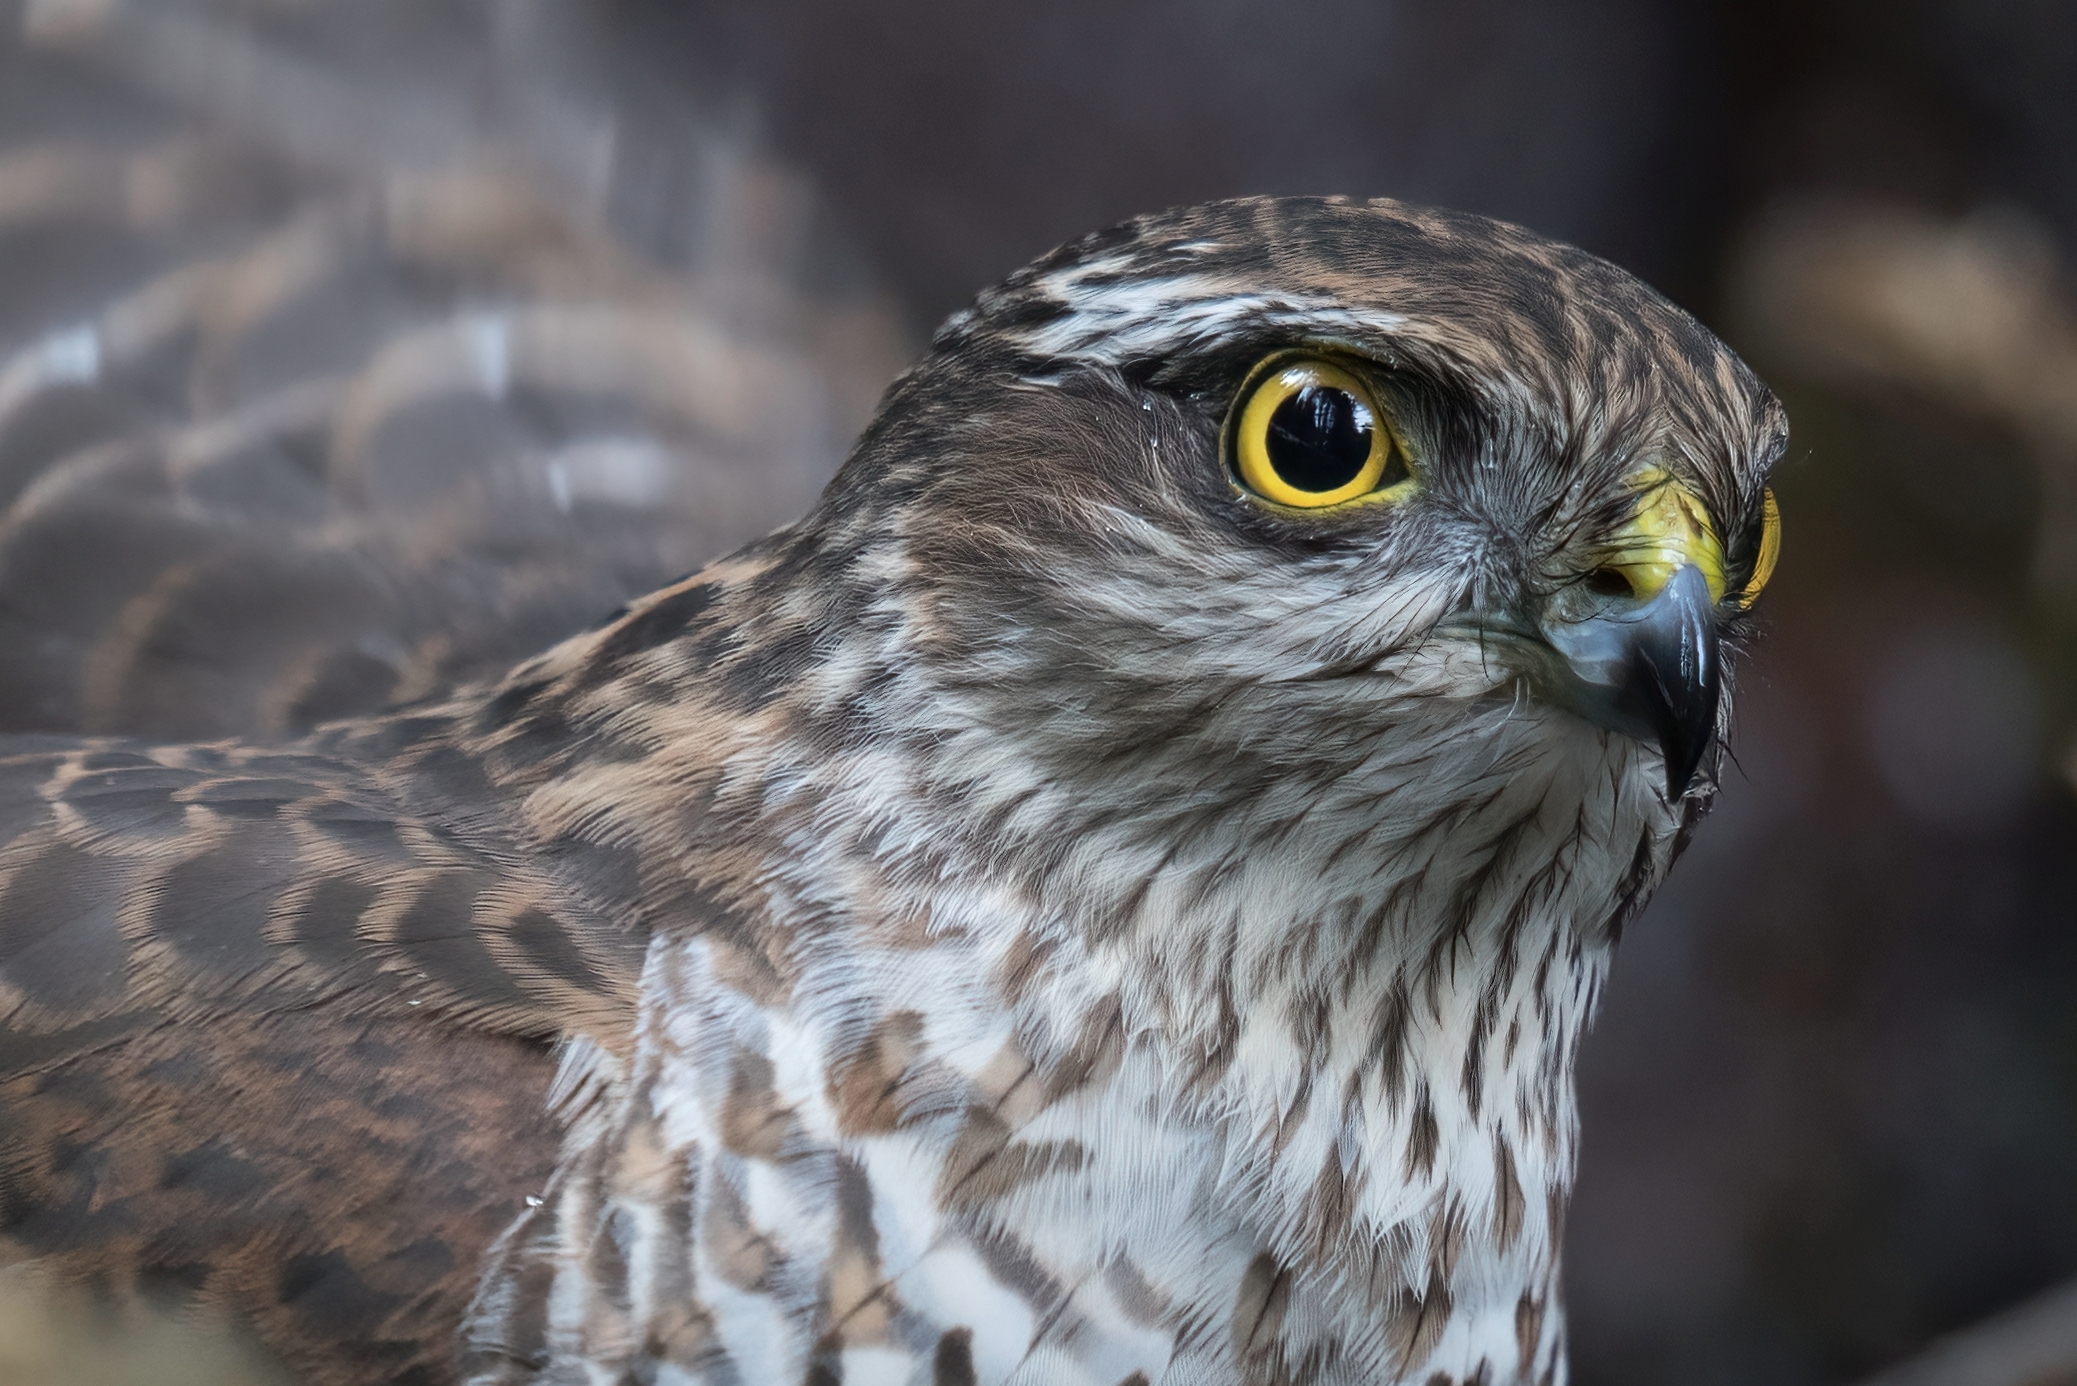 The Hawk's Watchful Eye...